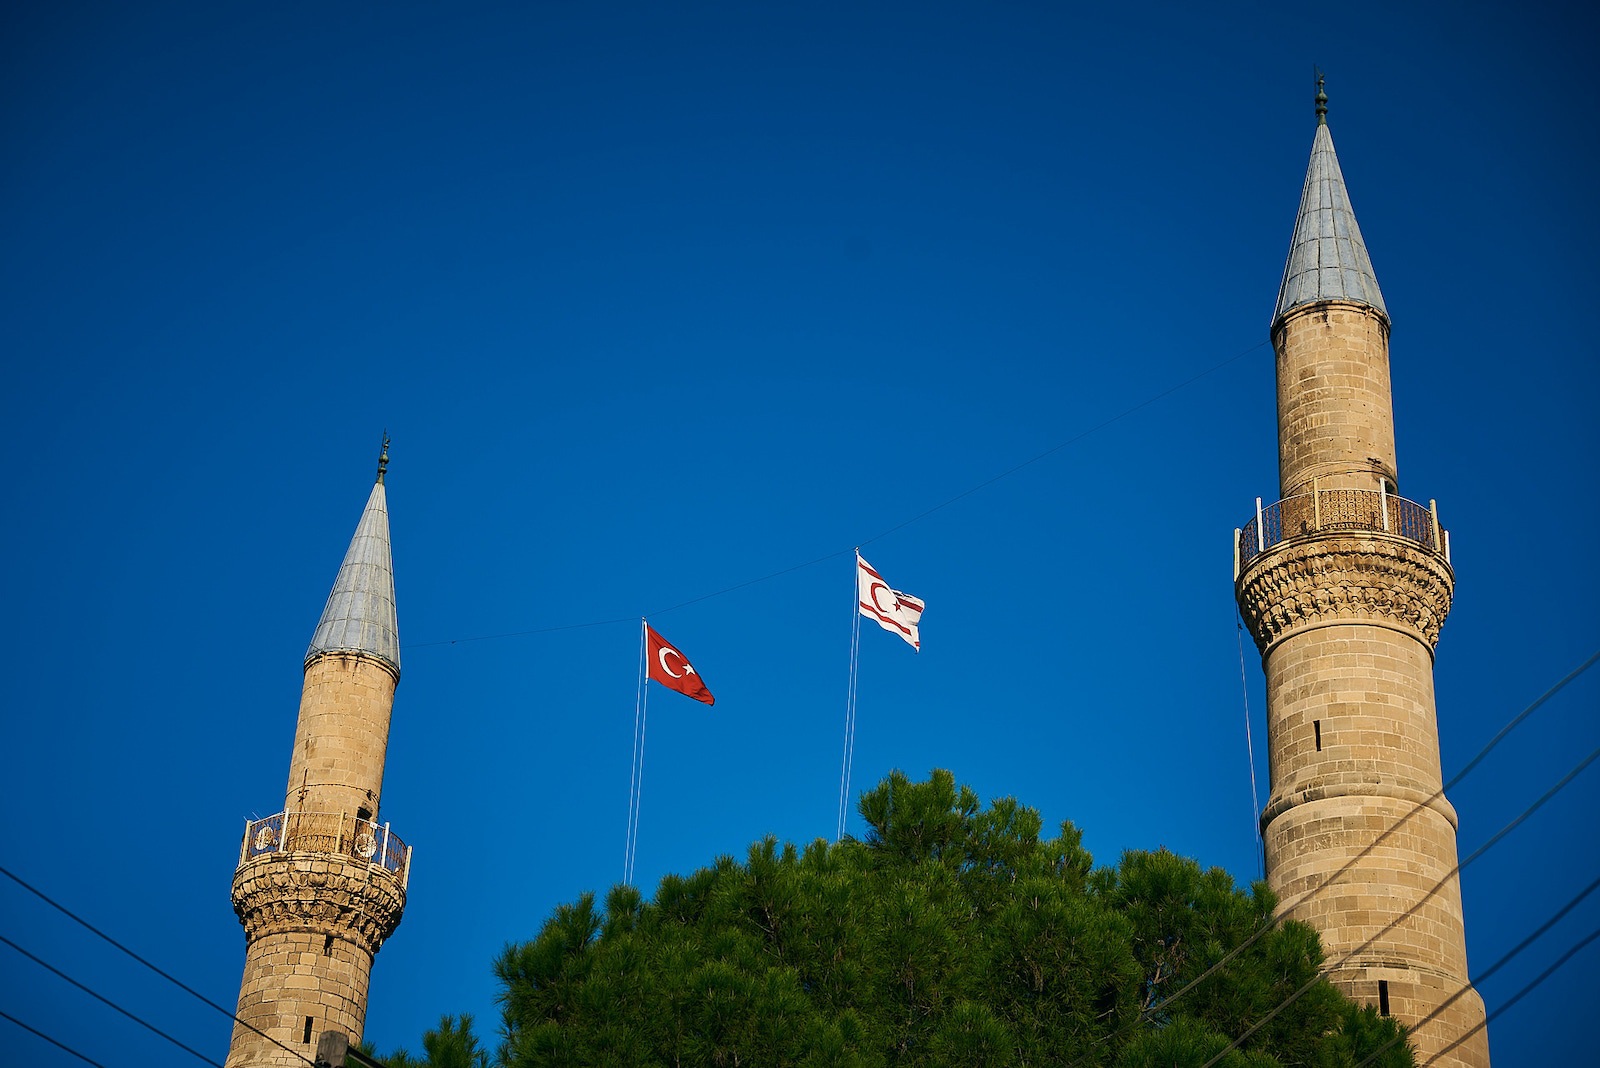 Чтобы полностью убедиться, что вы в Турции, за барахолкой обязана быть мечеть. Вот она!